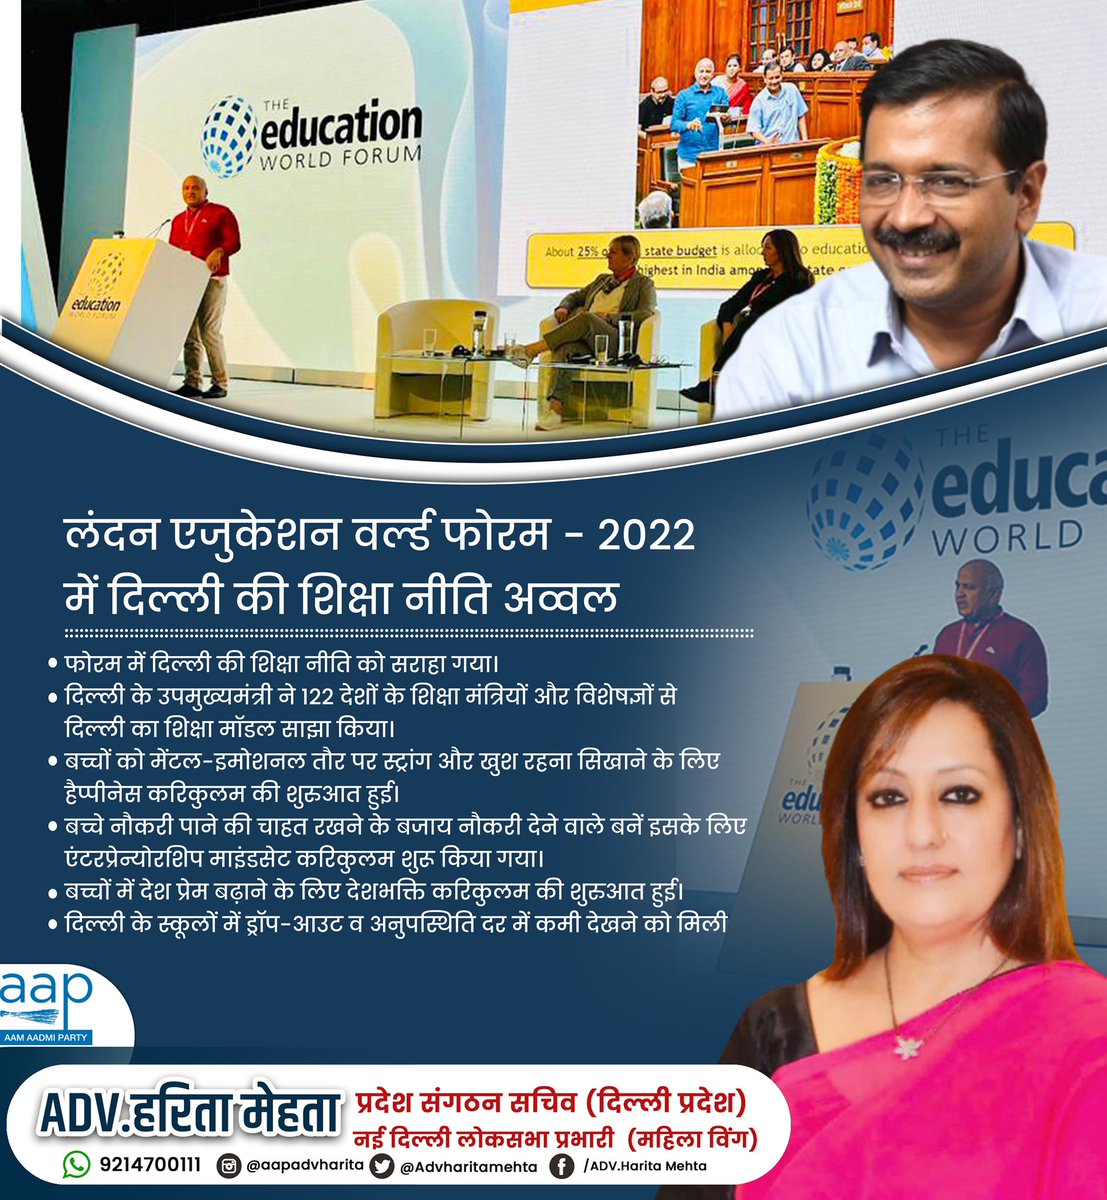 लंदन एजुकेशन वर्ल्ड फोरम-2022 में दिल्ली सरकार की शिक्षा नीति को मिली विश्व स्तर पर सराहना।

#Delhi #London #EWF2022 #Education #Forum #EducationModel #DelhiGovt #kejariwalgovernment #advharitamehta #हरितामेहता